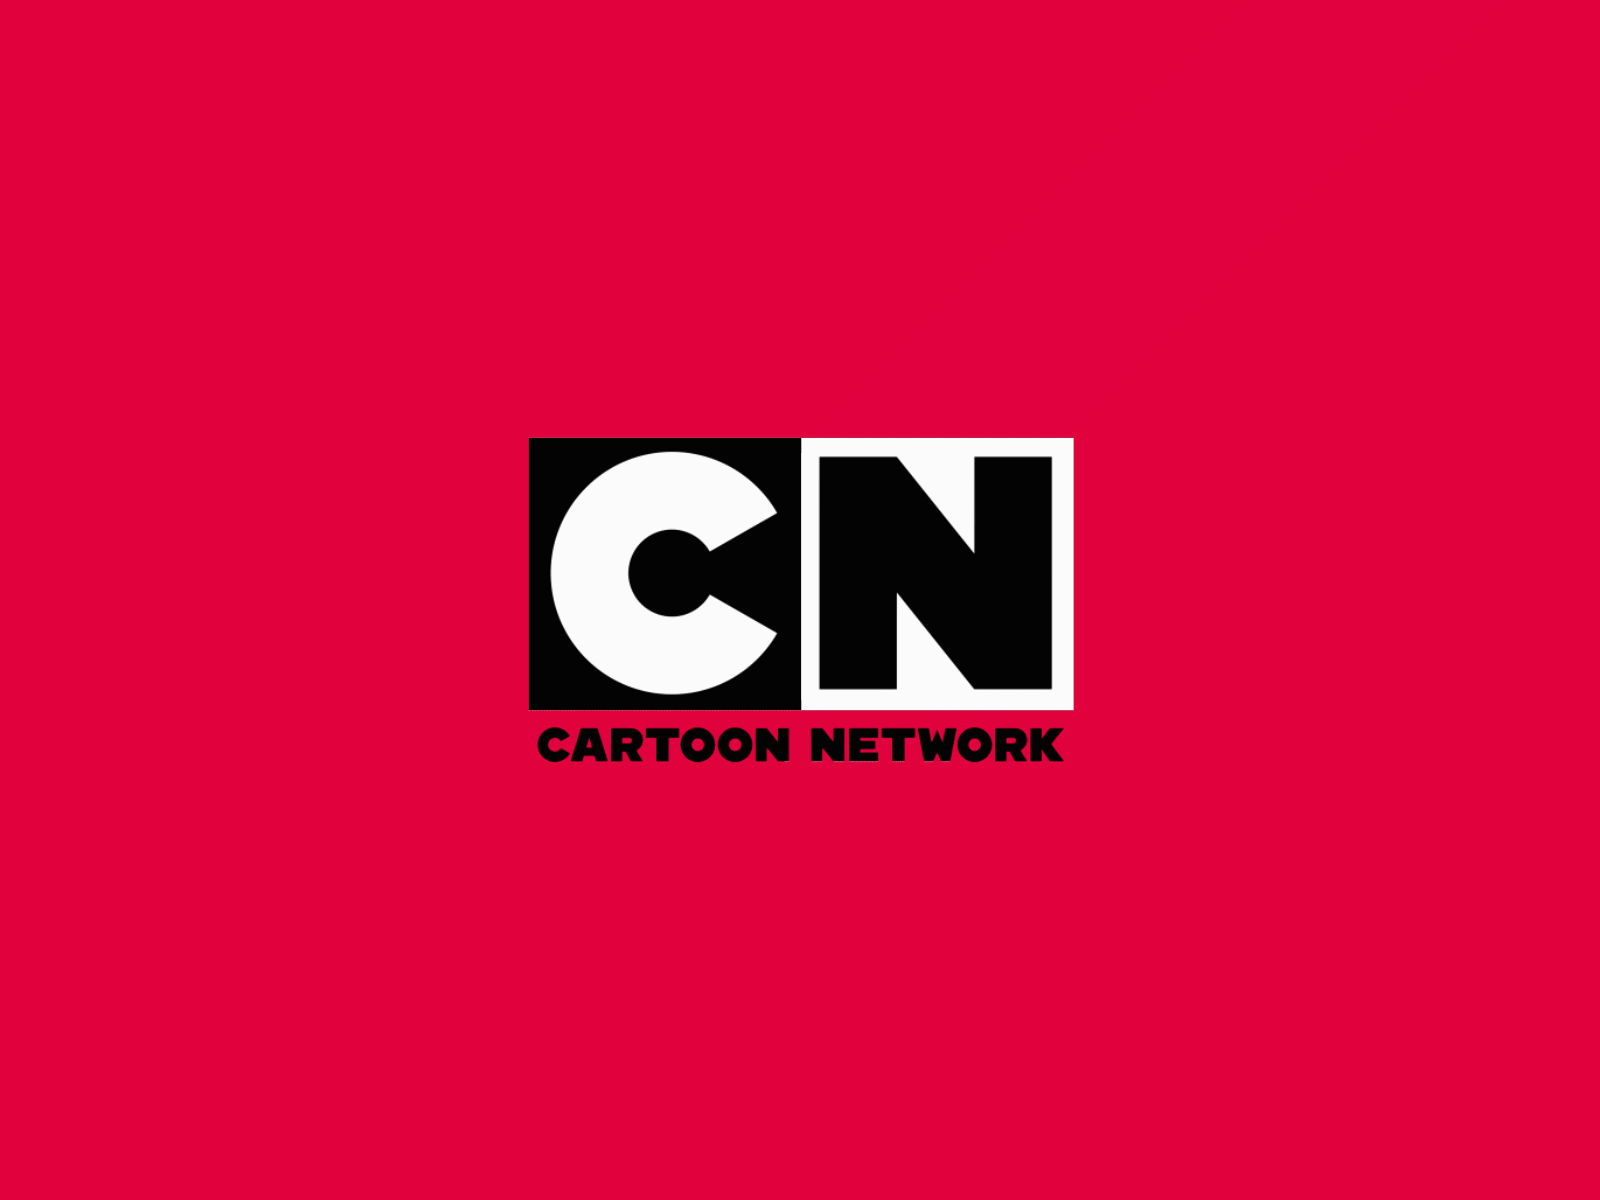 Hình simba logo of cartoon network được yêu thích trong giới trẻ hiện nay